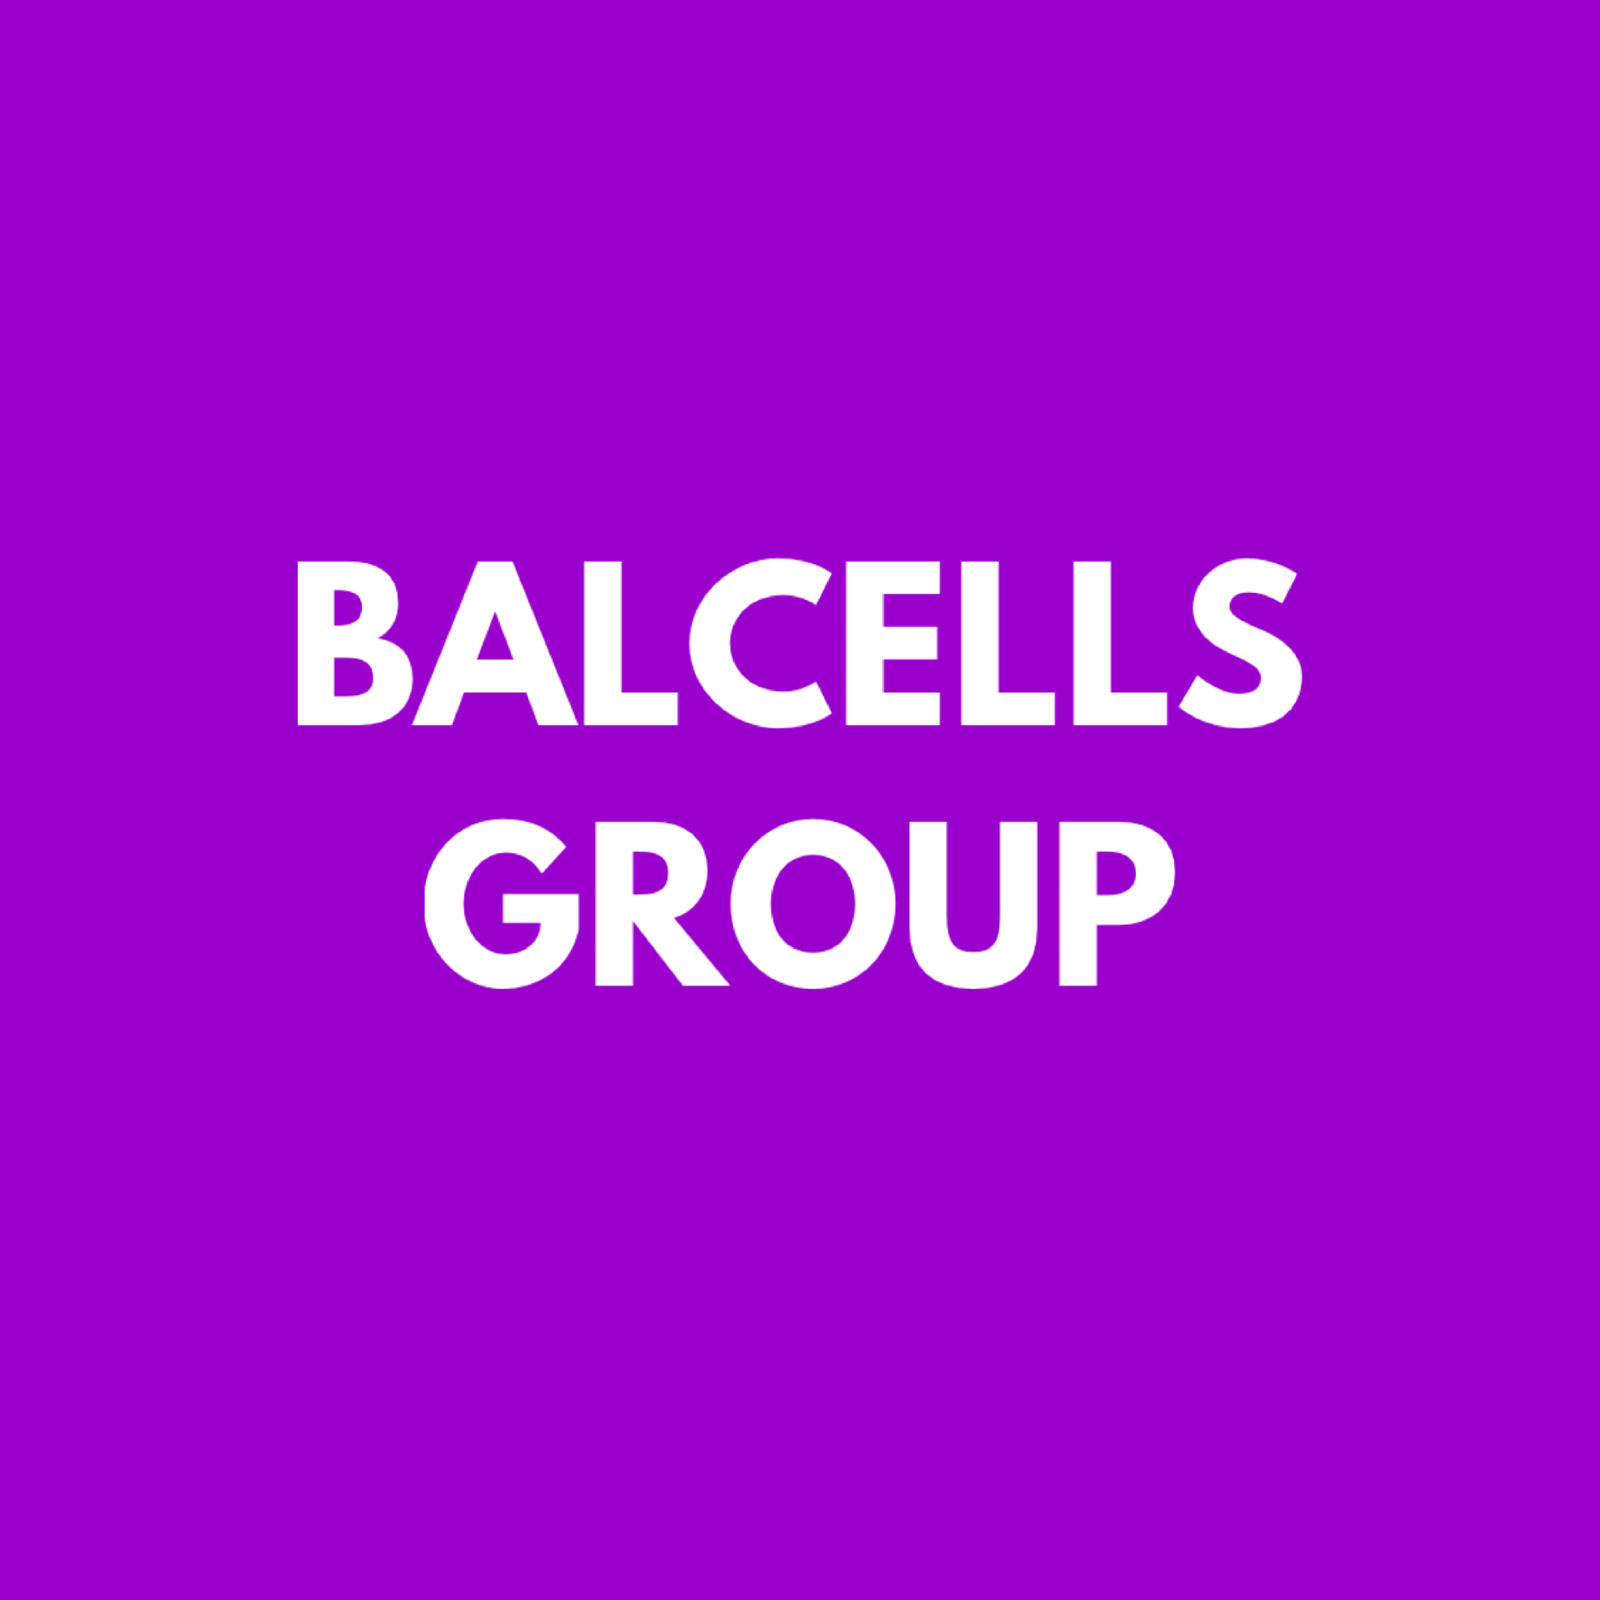 Balcells group